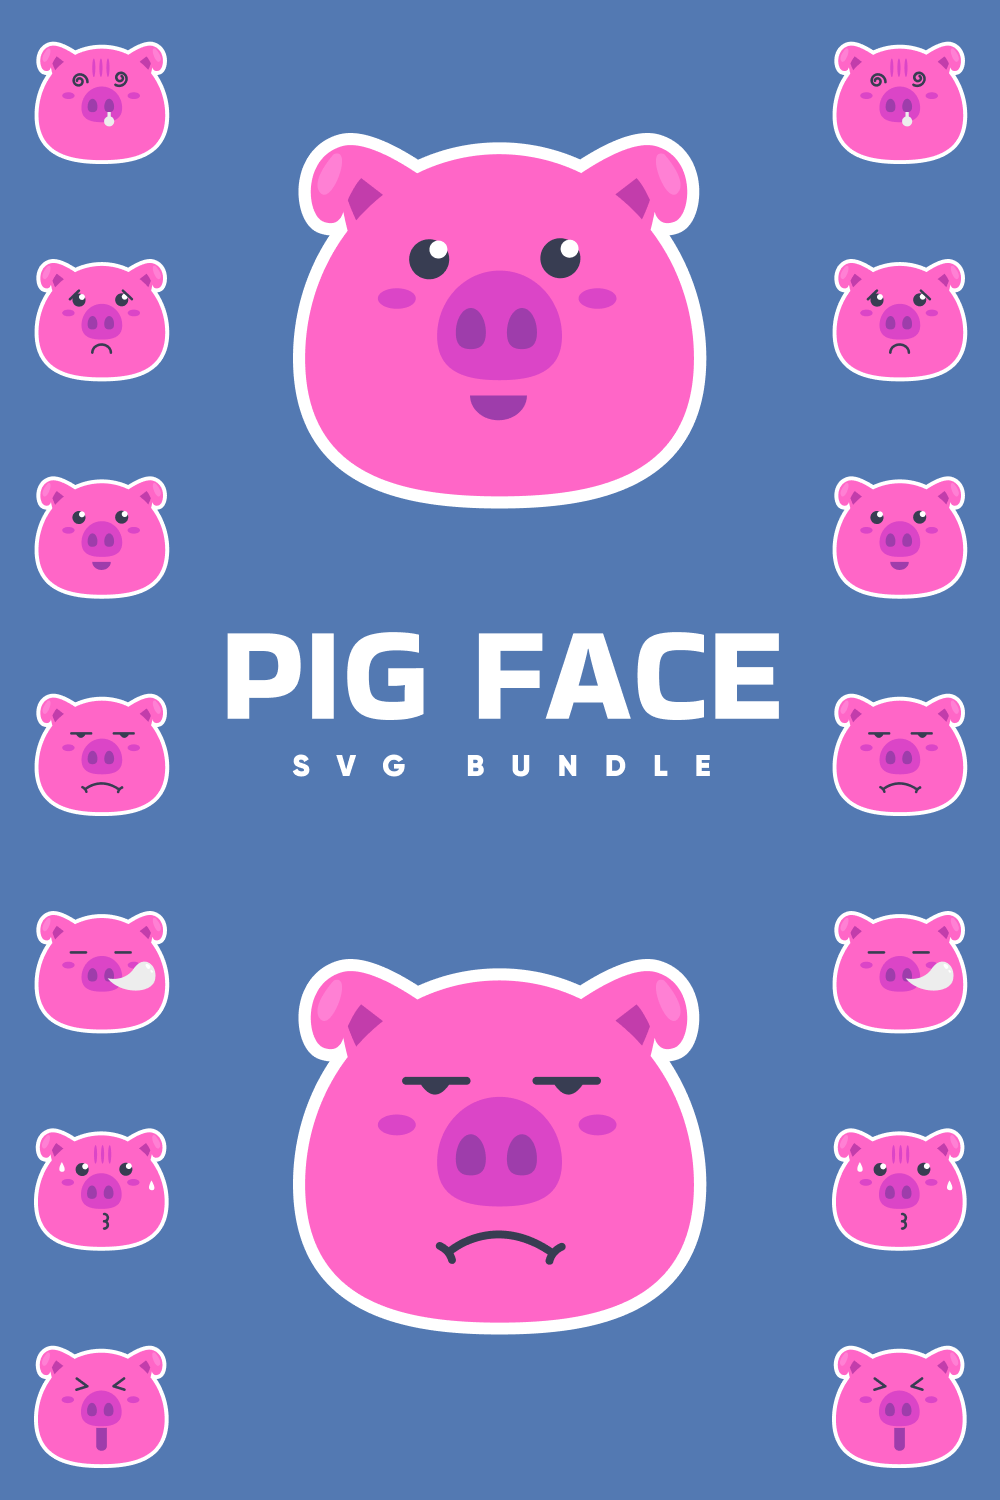 Pig face svg bundle.